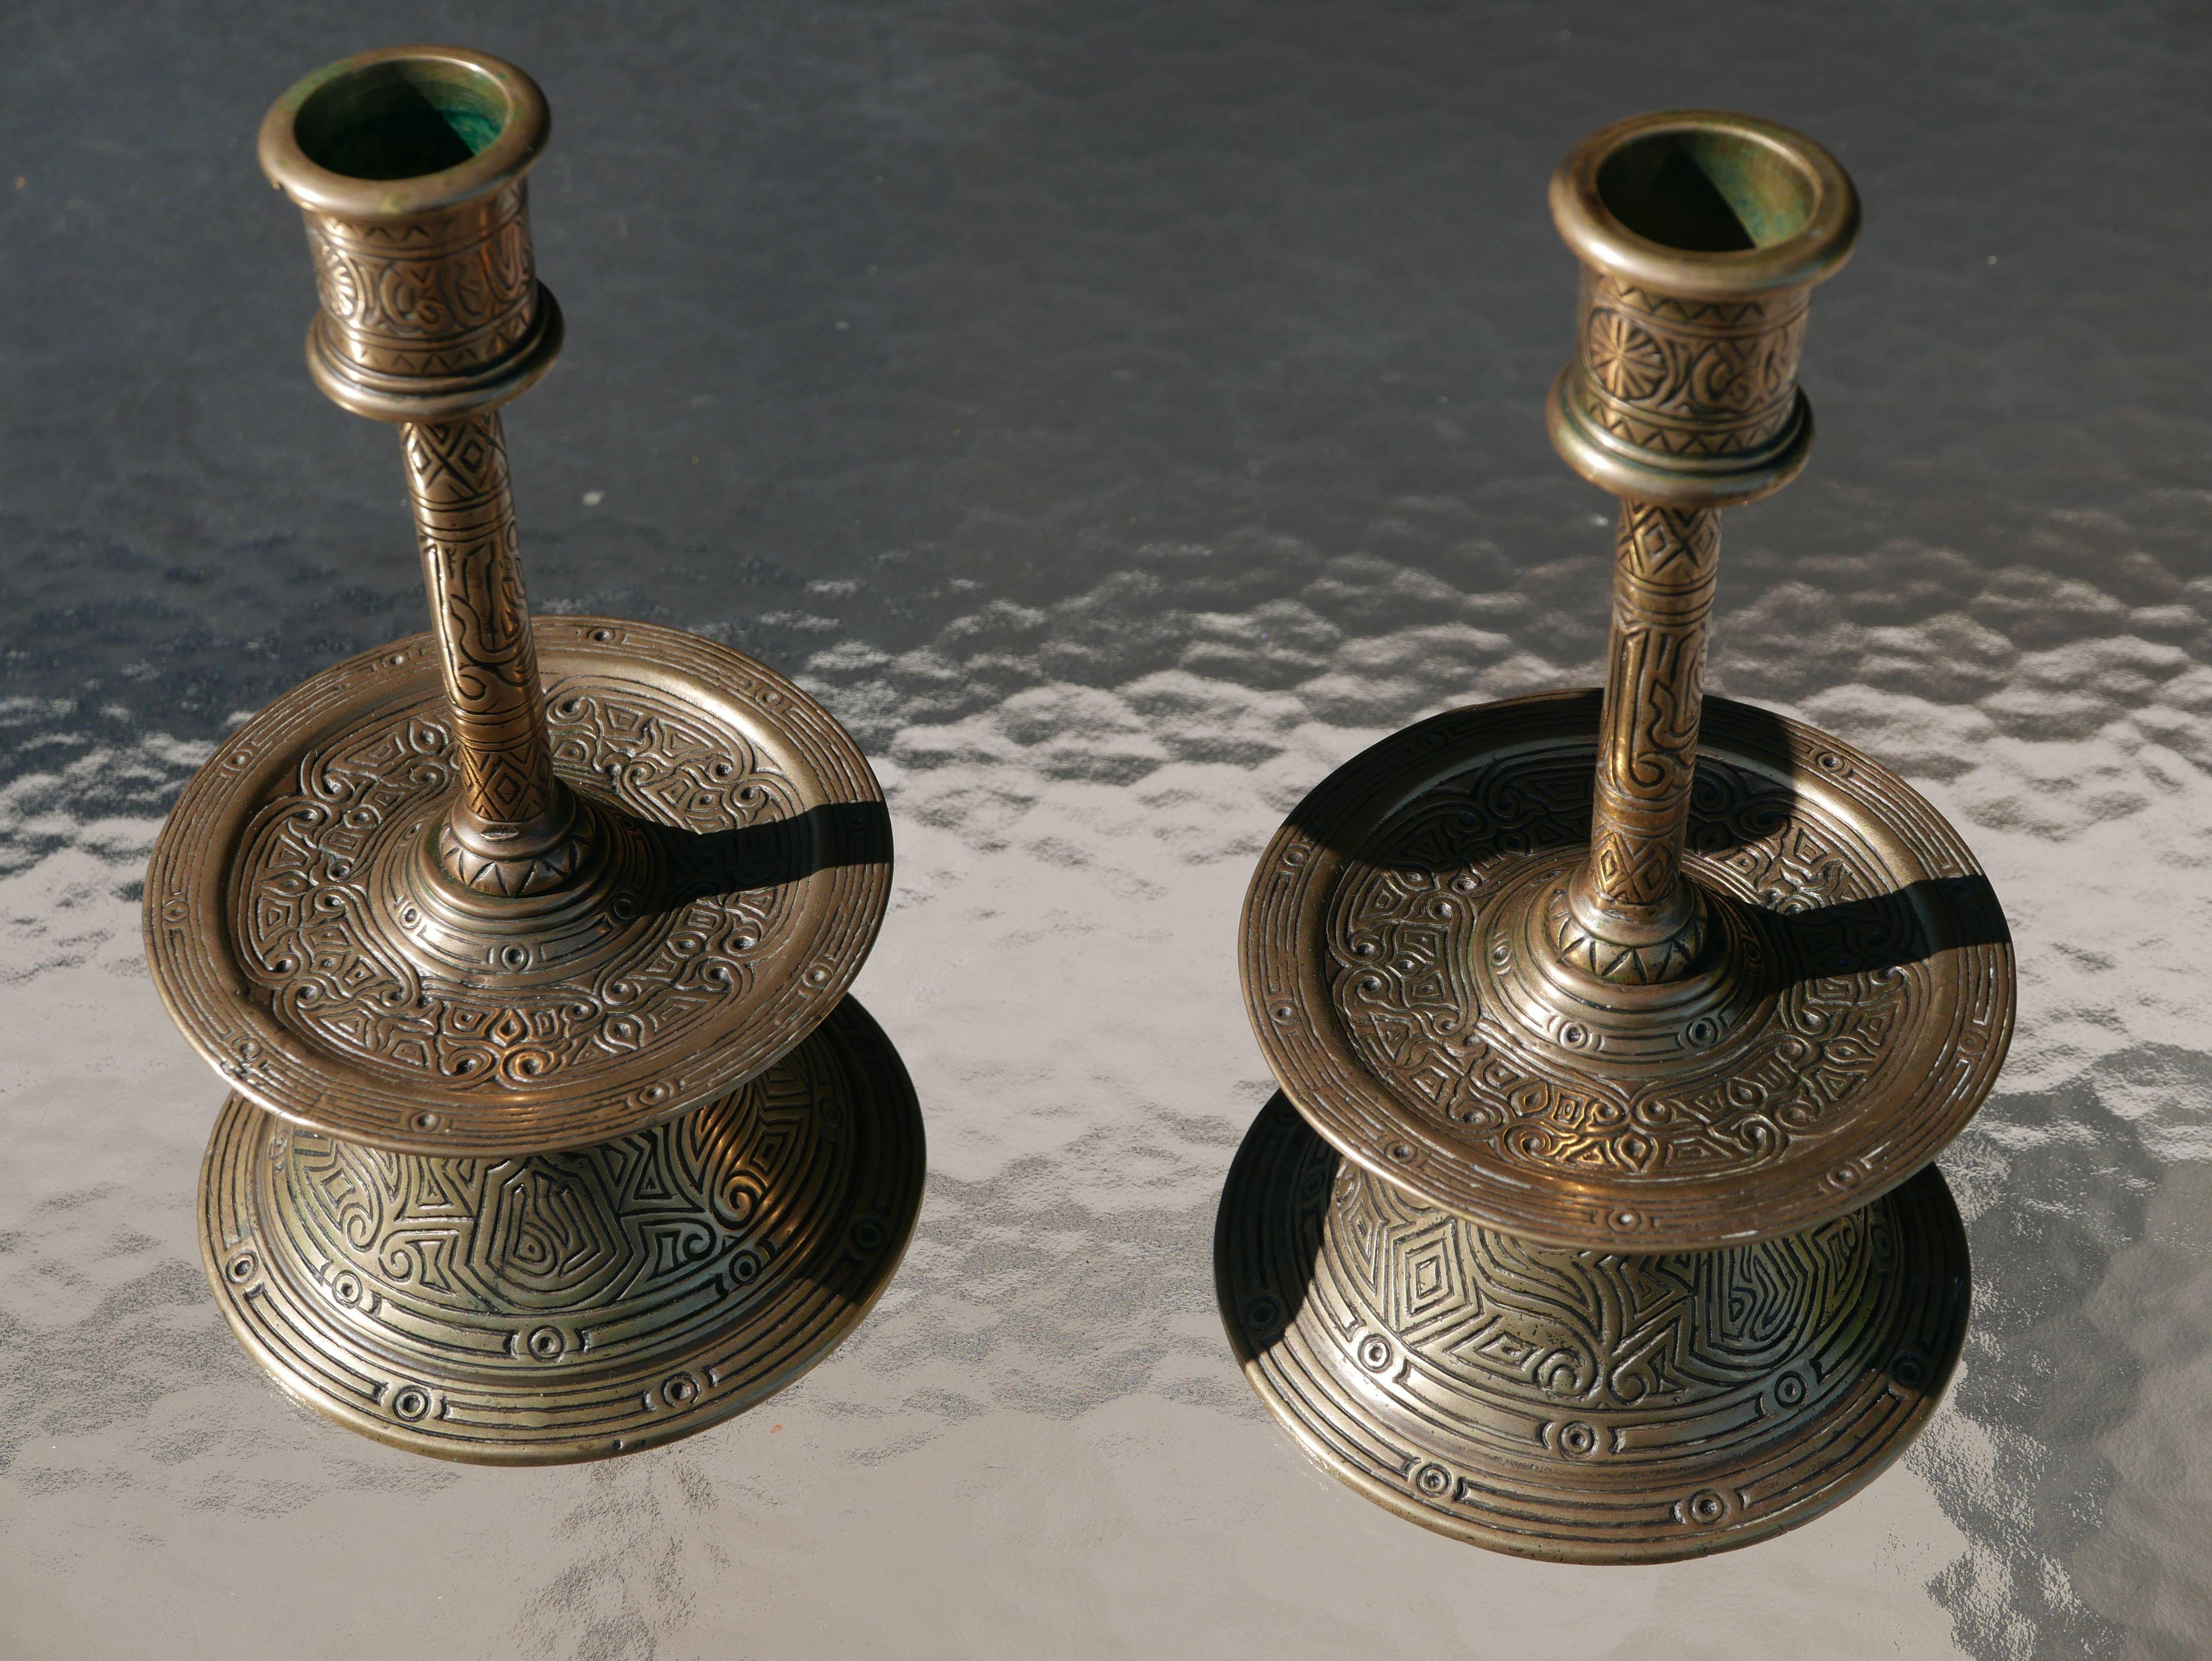 Magnifique et rare paire de chandeliers en bronze incisé du XVIIe siècle ottoman, de qualité muséale. Ils sont pratiquement identiques à celui illustré à la page 56, figure 61, du livre 